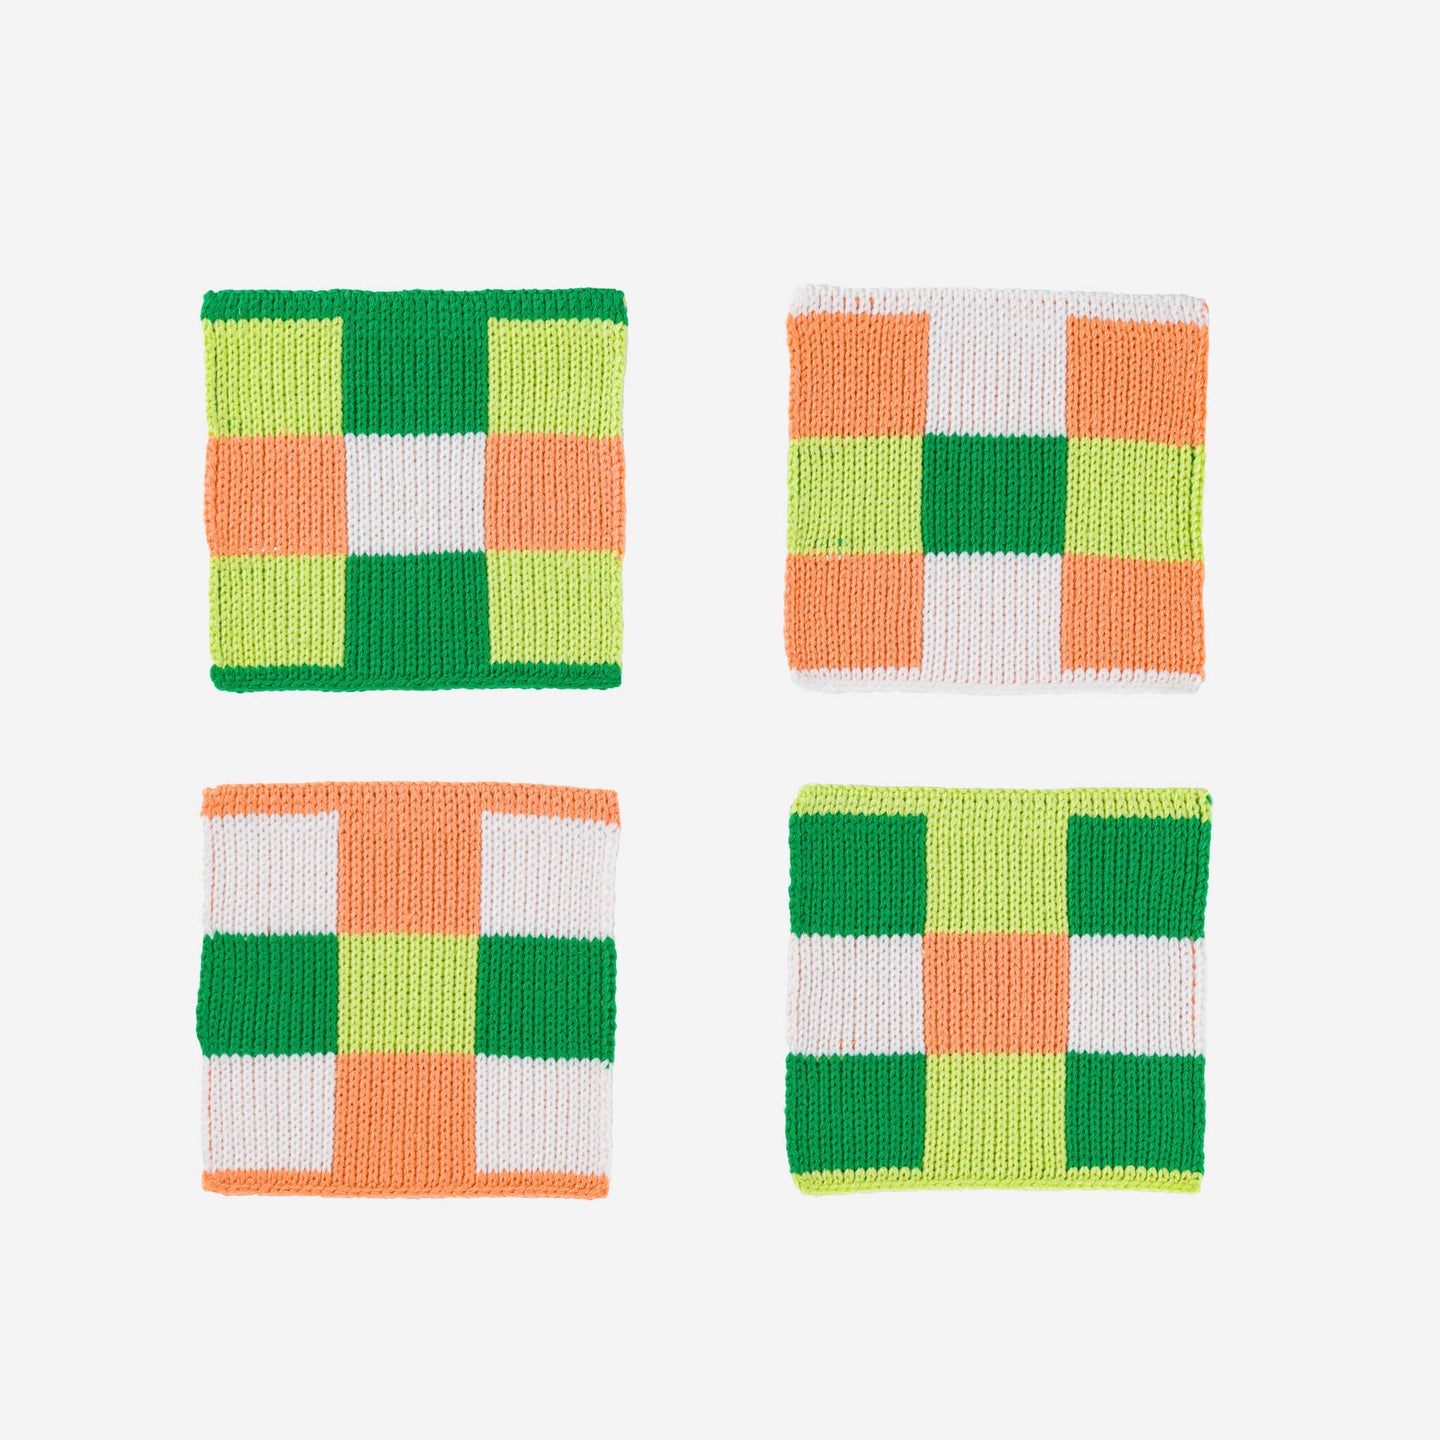 Square Square Soft Fabric Knit Coasters Non Scratch Checkerboard 